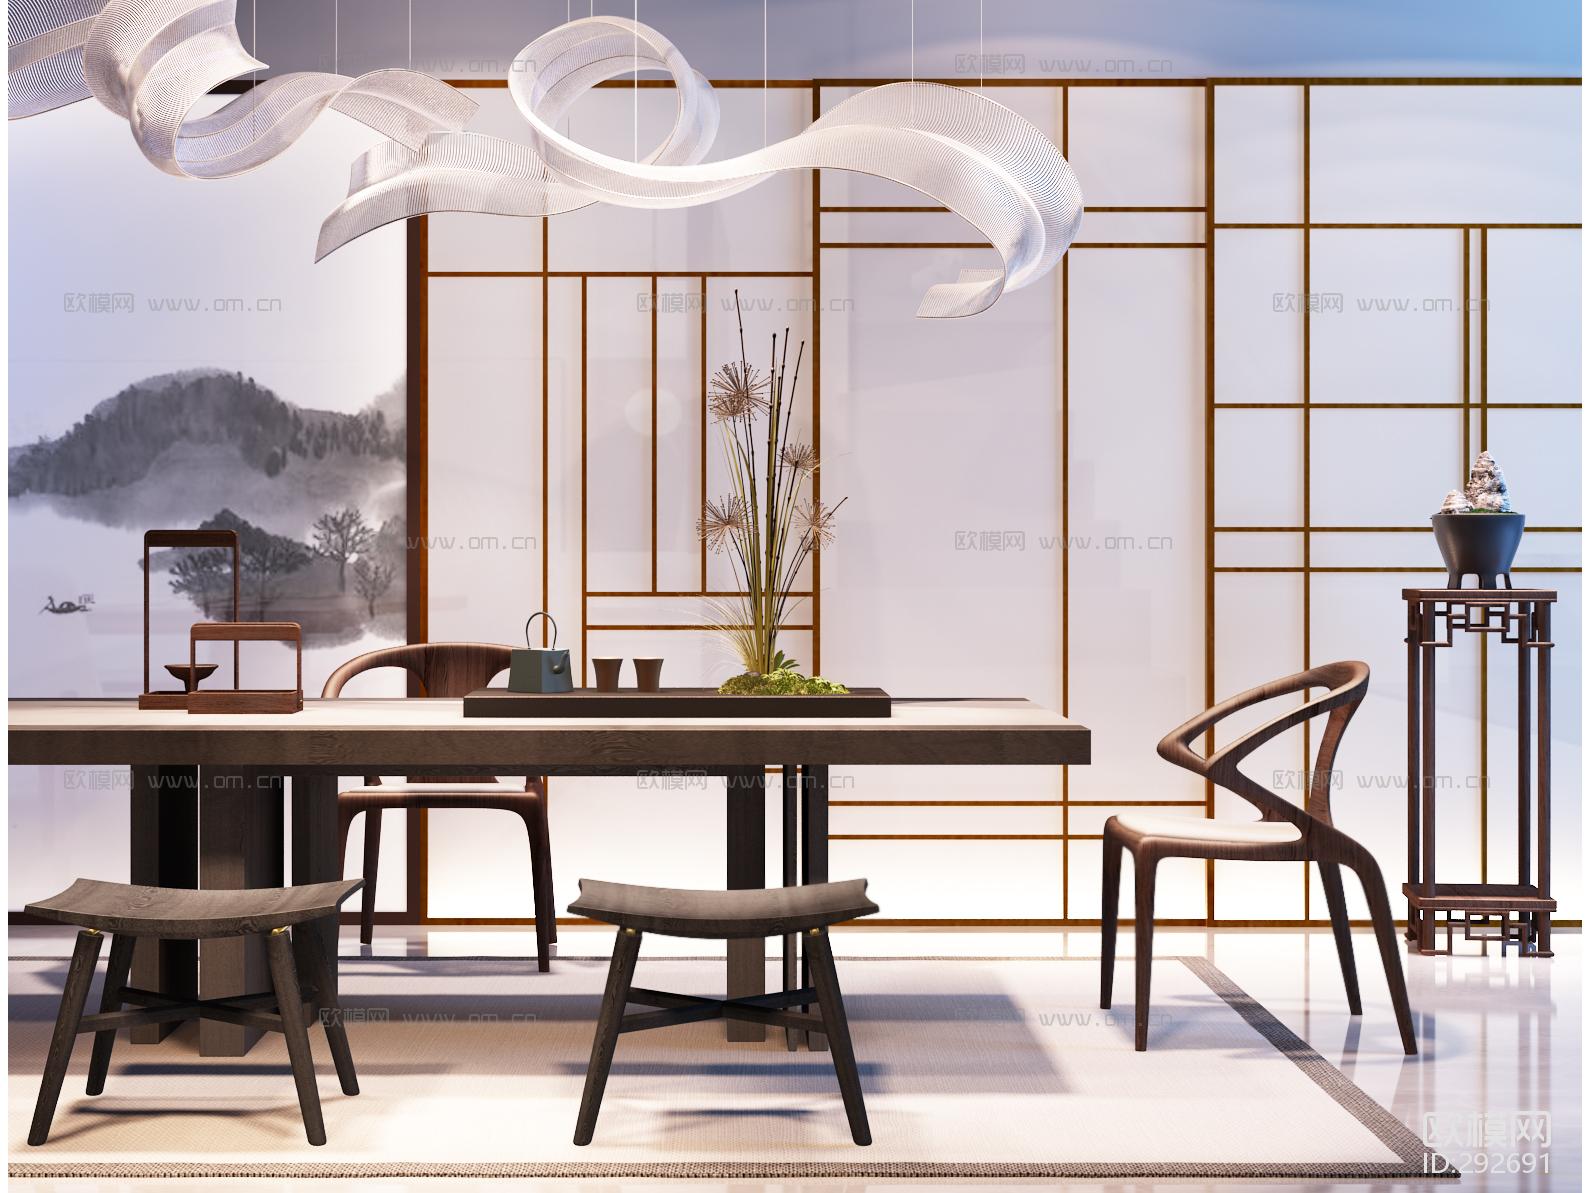 中式茶桌椅子吊灯屏风饰品摆设3D模型ID292691